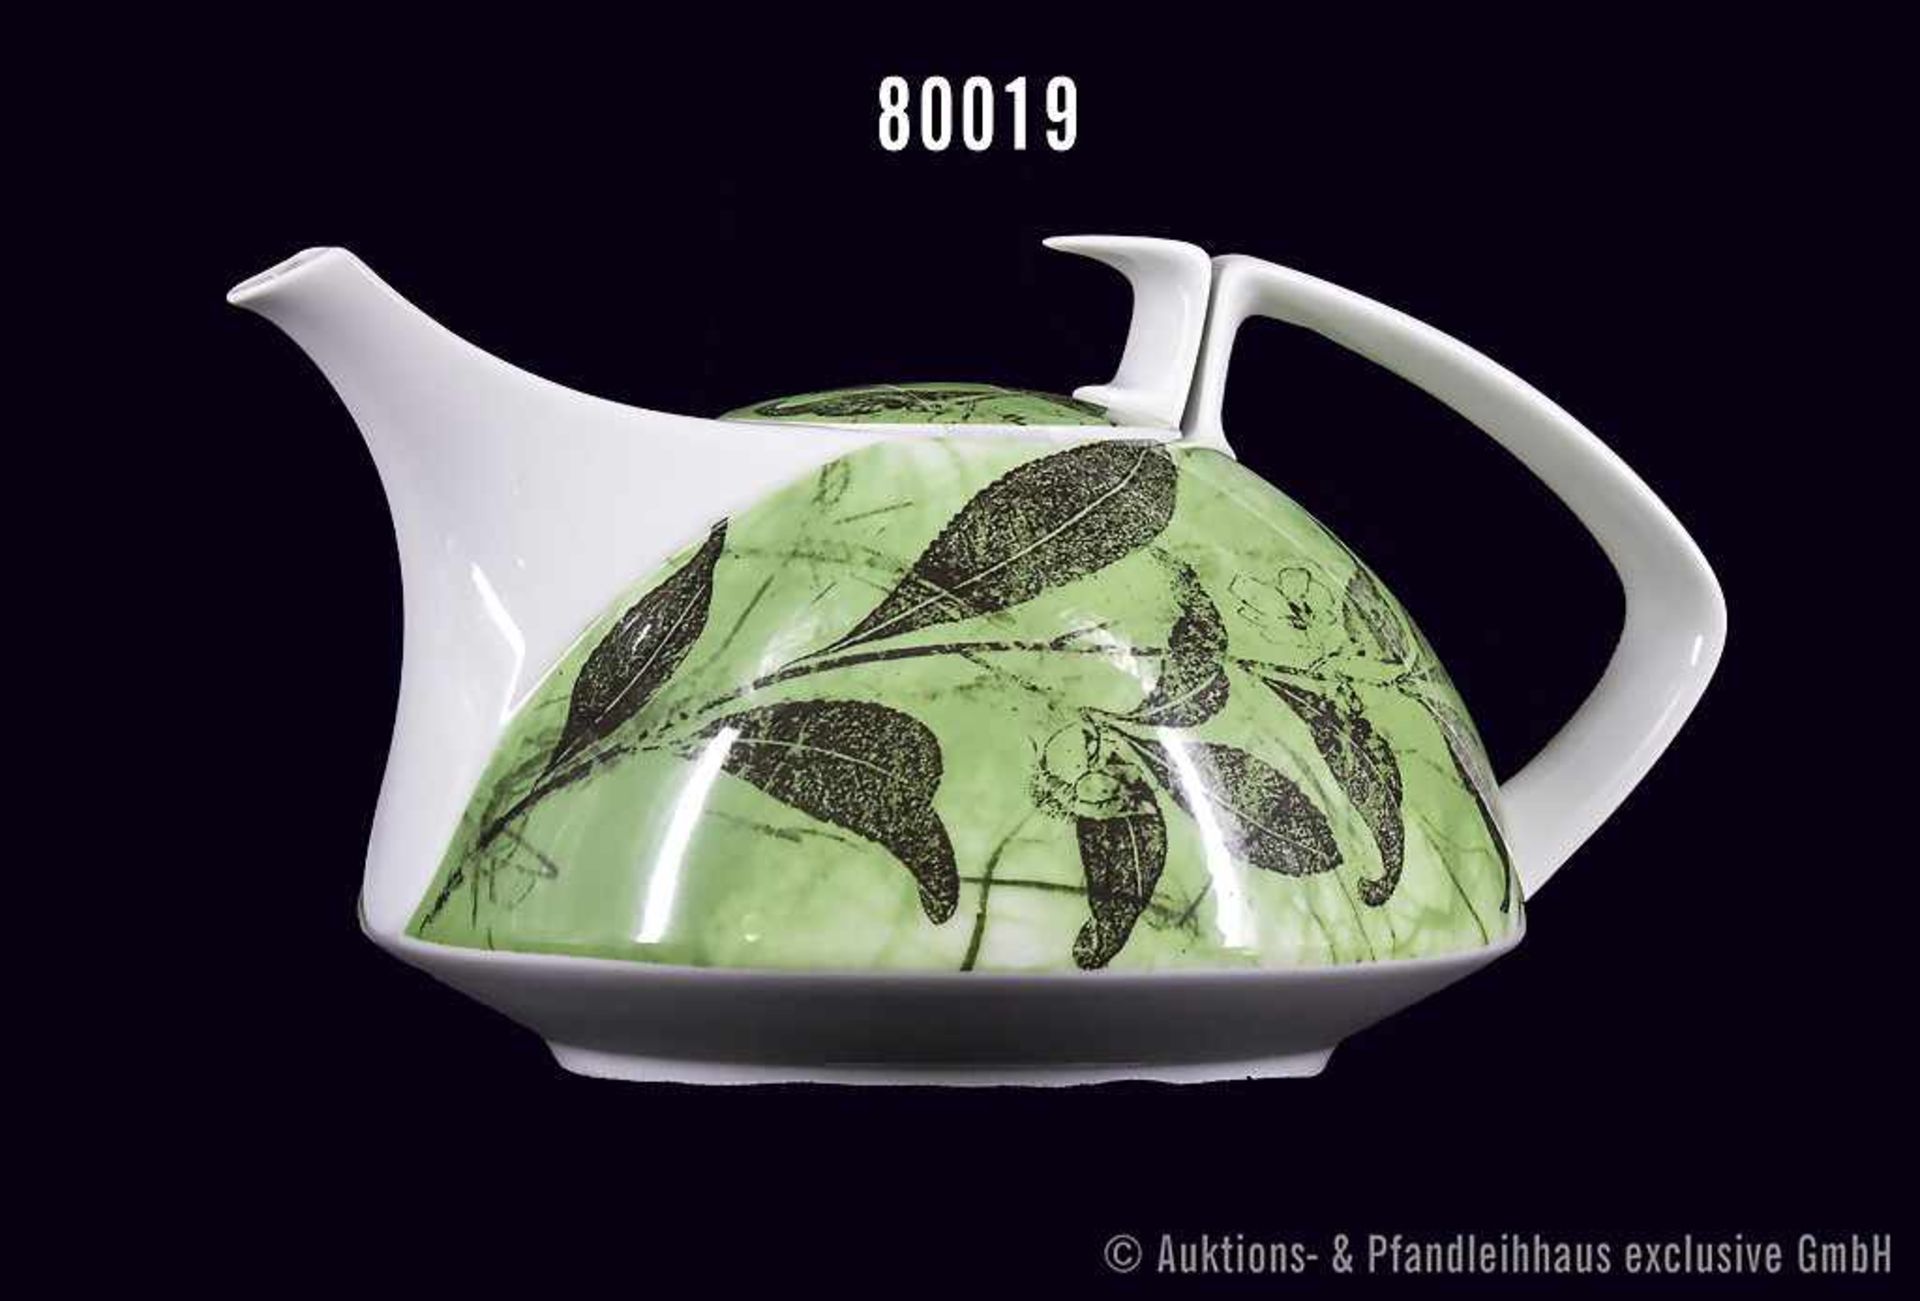 Rosenthal Porzellan, Teekanne Form Gropius Künstler Kanne, Dekor Green Tea, von Arnulf Rainer,